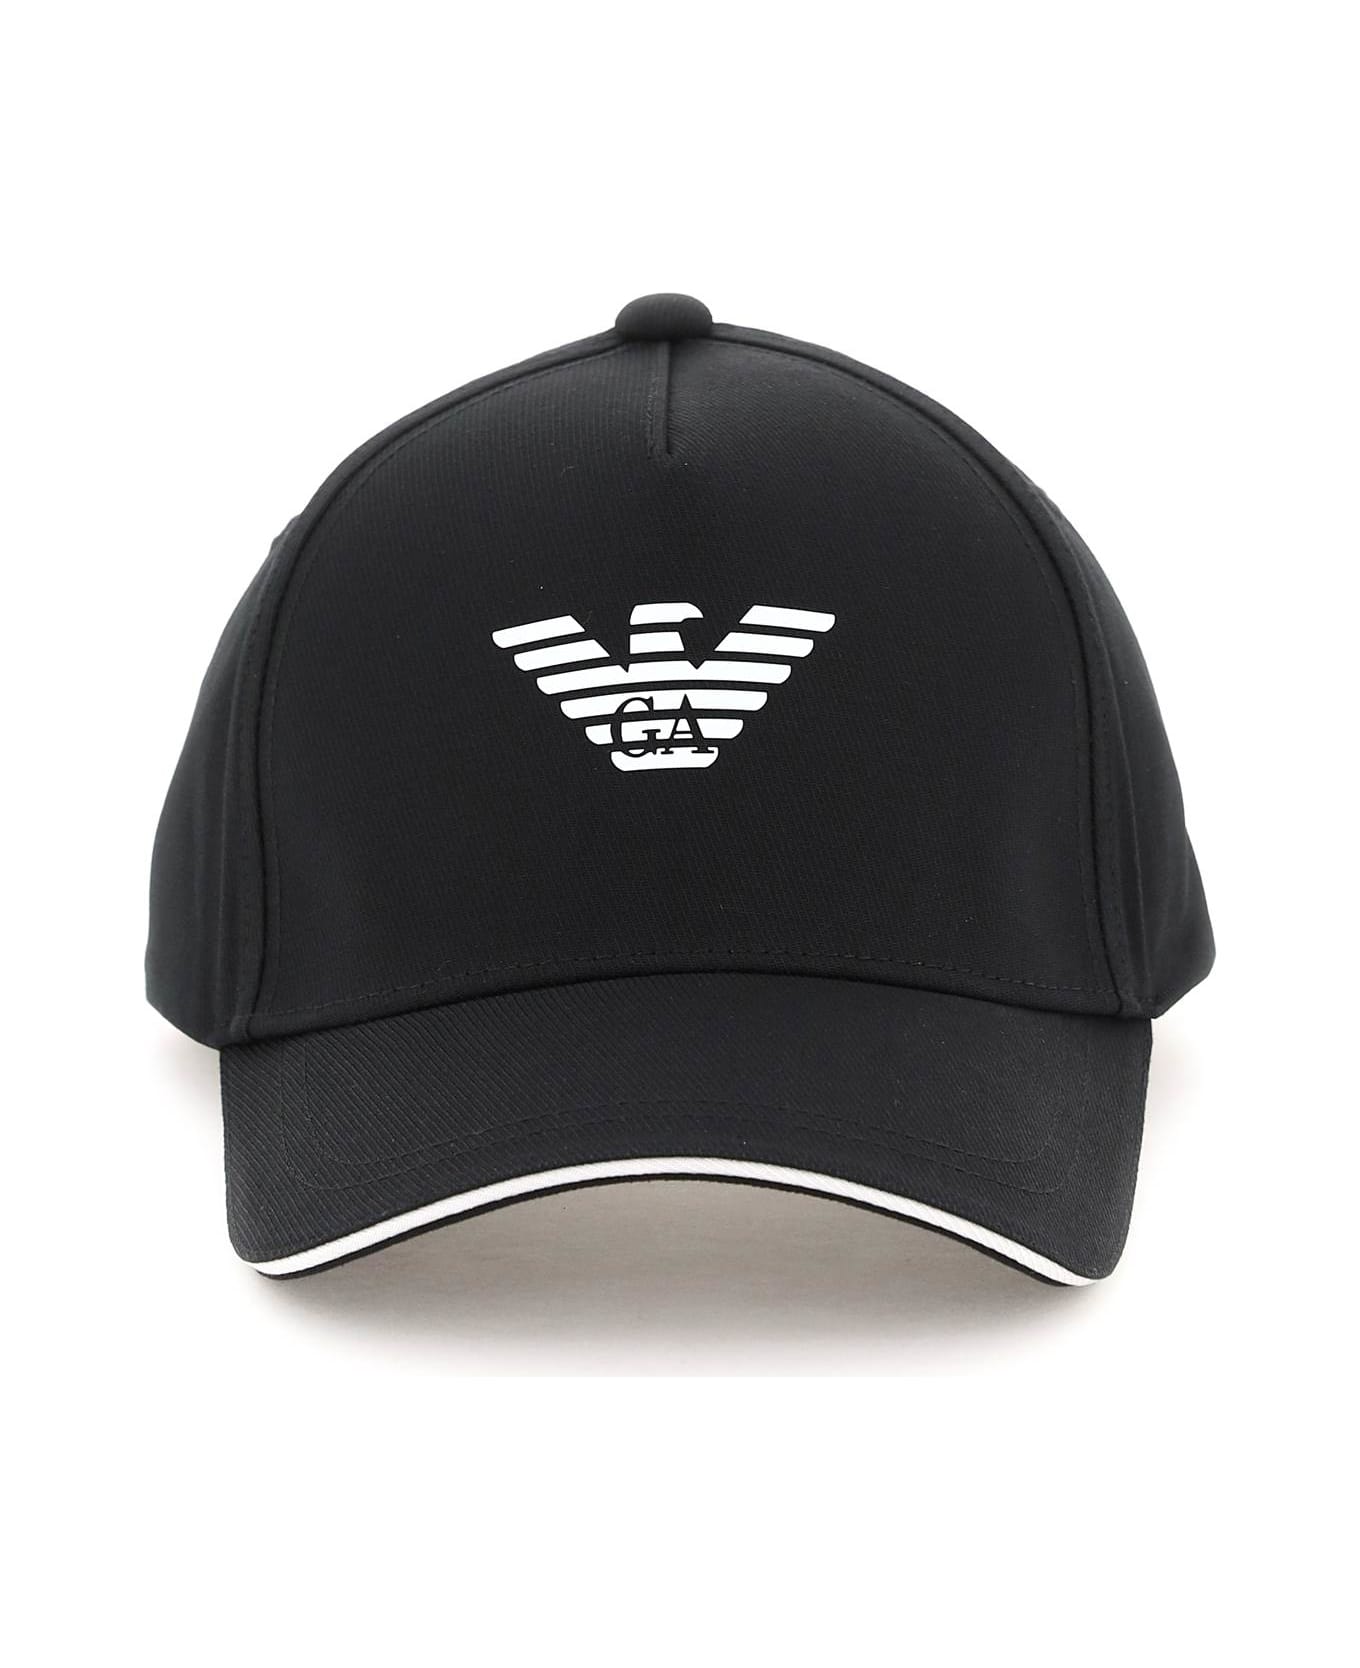 Emporio Armani Baseball Cap With Logo - Black